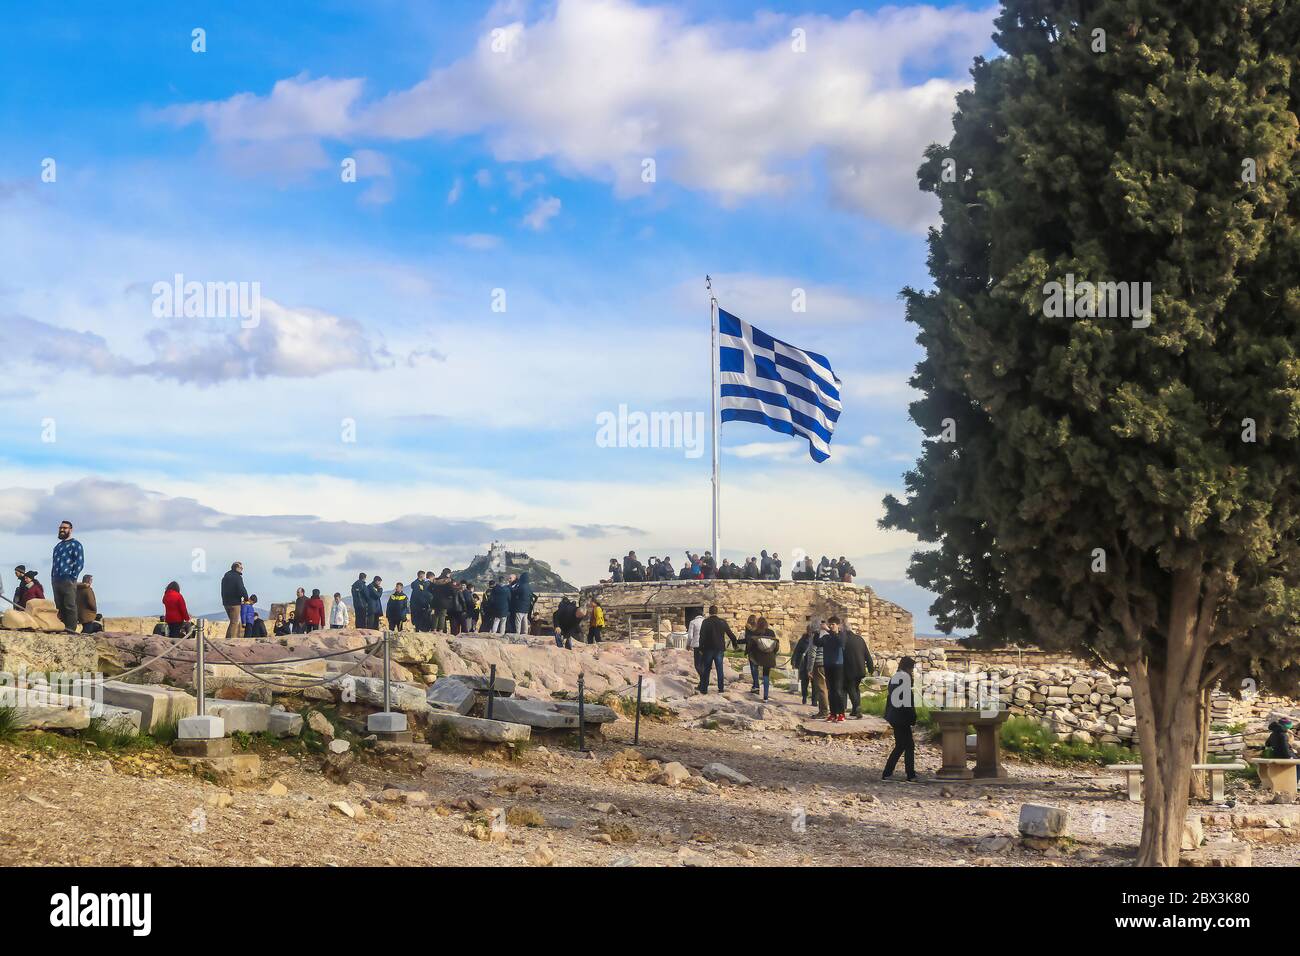 2018 01 03 Atene Grecia - i turisti all'Acropoli di Atene si riuniscono intorno alla bandiera greca scattando foto con la Cappella di San Giorgio su Lykavitto Foto Stock